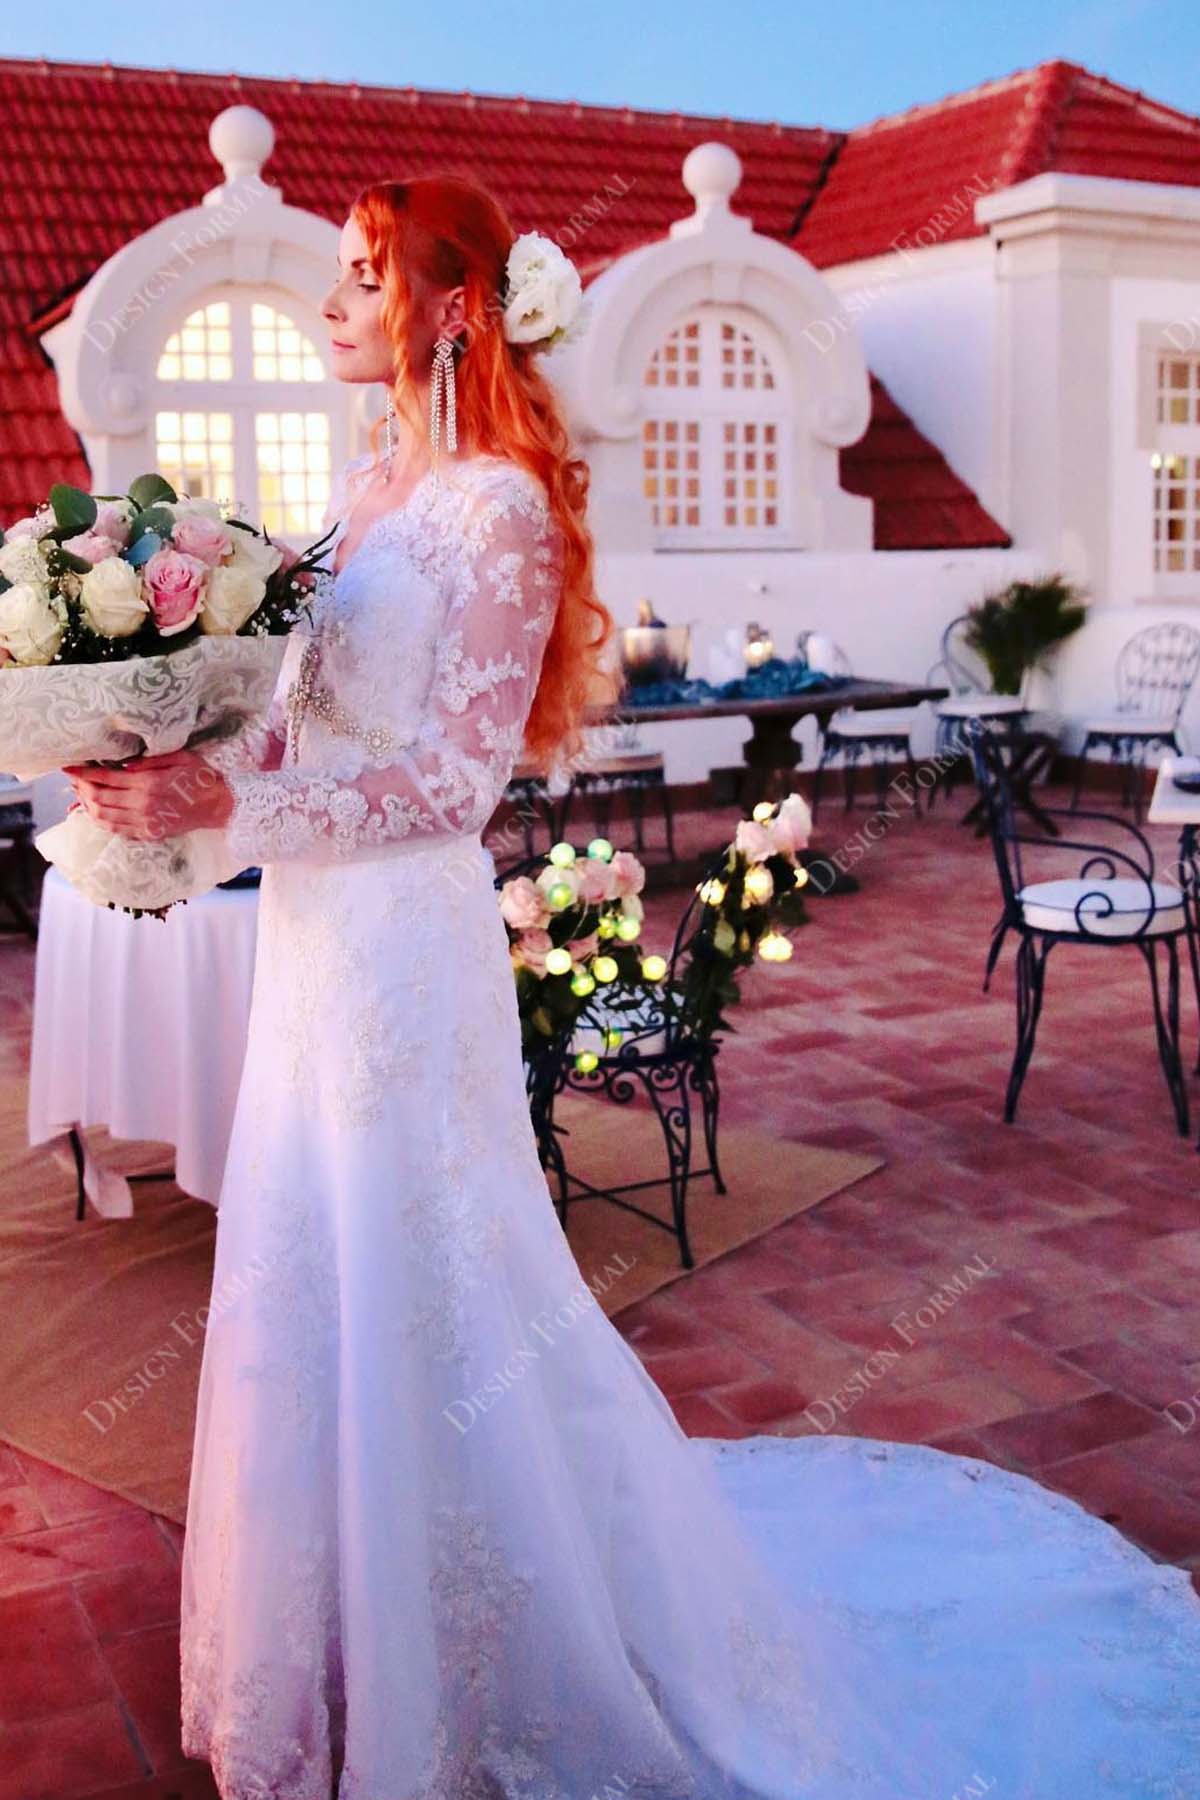 V-neck illusion long sleeved lace wedding dress